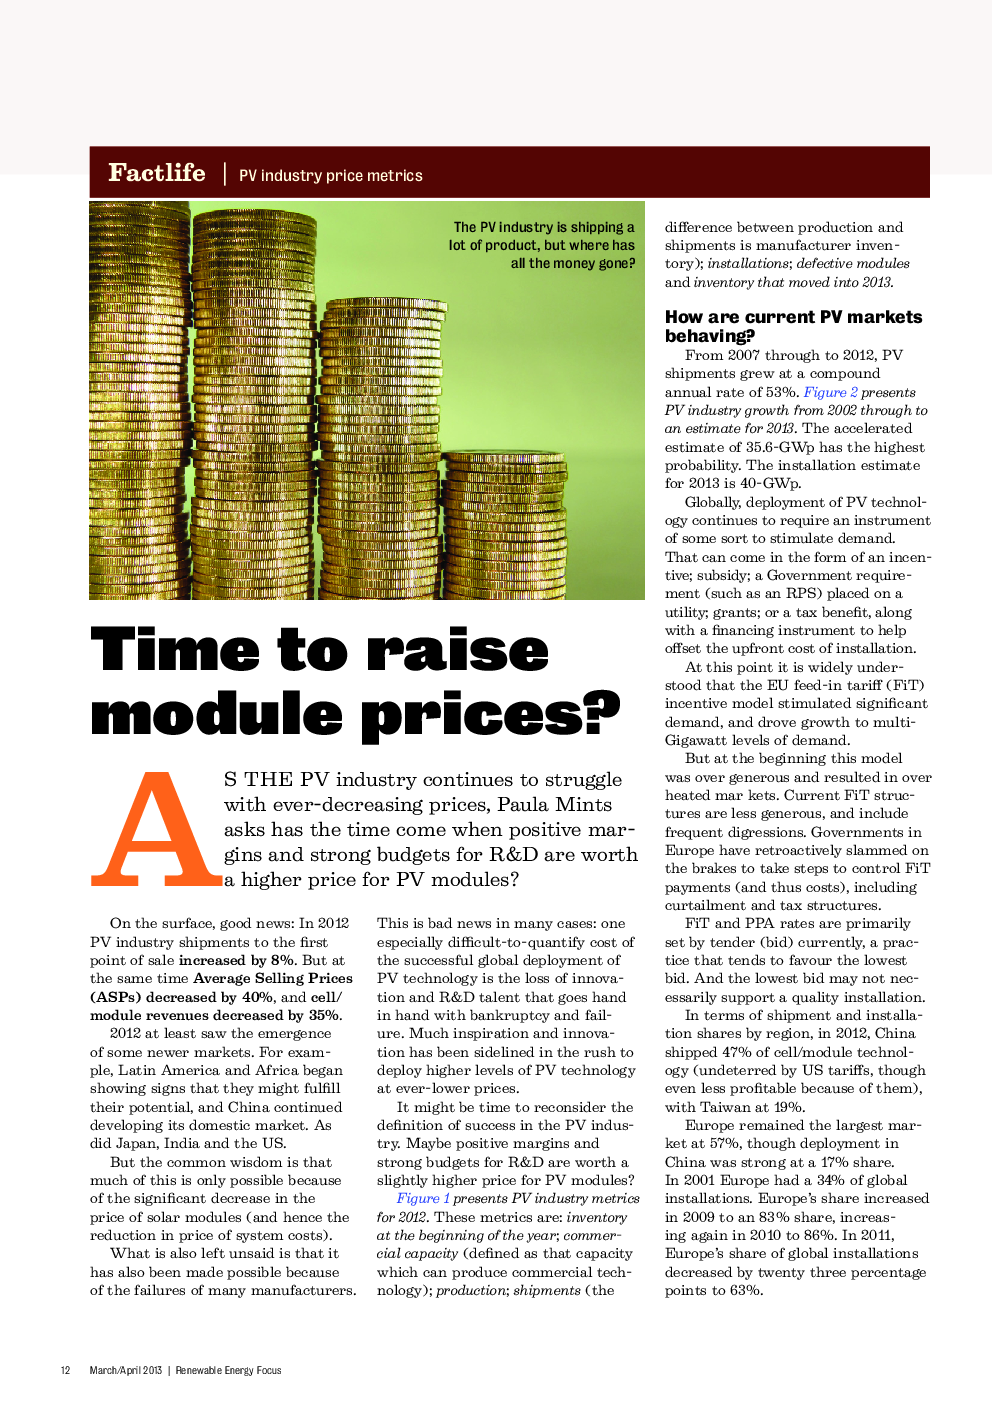 Time to raise module prices?